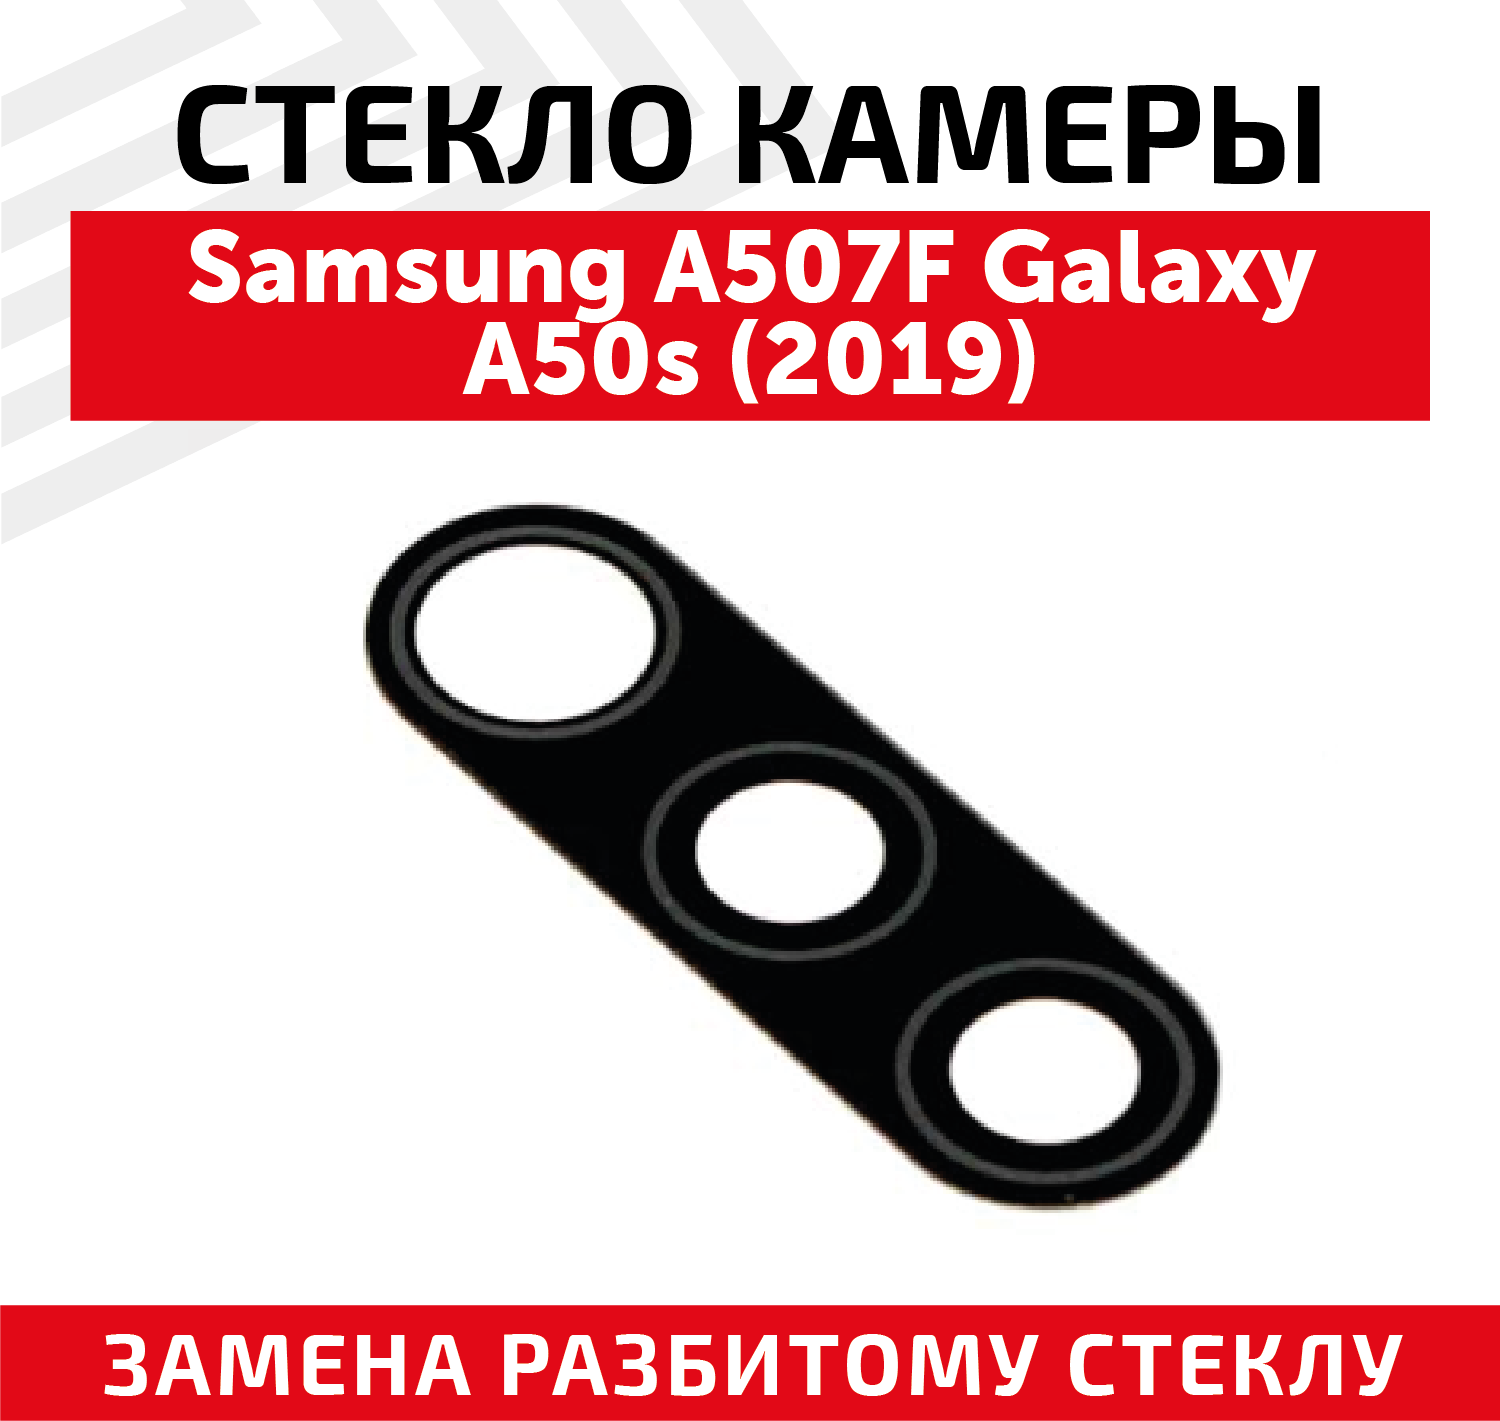 Стекло камеры для мобильного телефона (смартфона) Samsung Galaxy A50s 2019 (A507F)